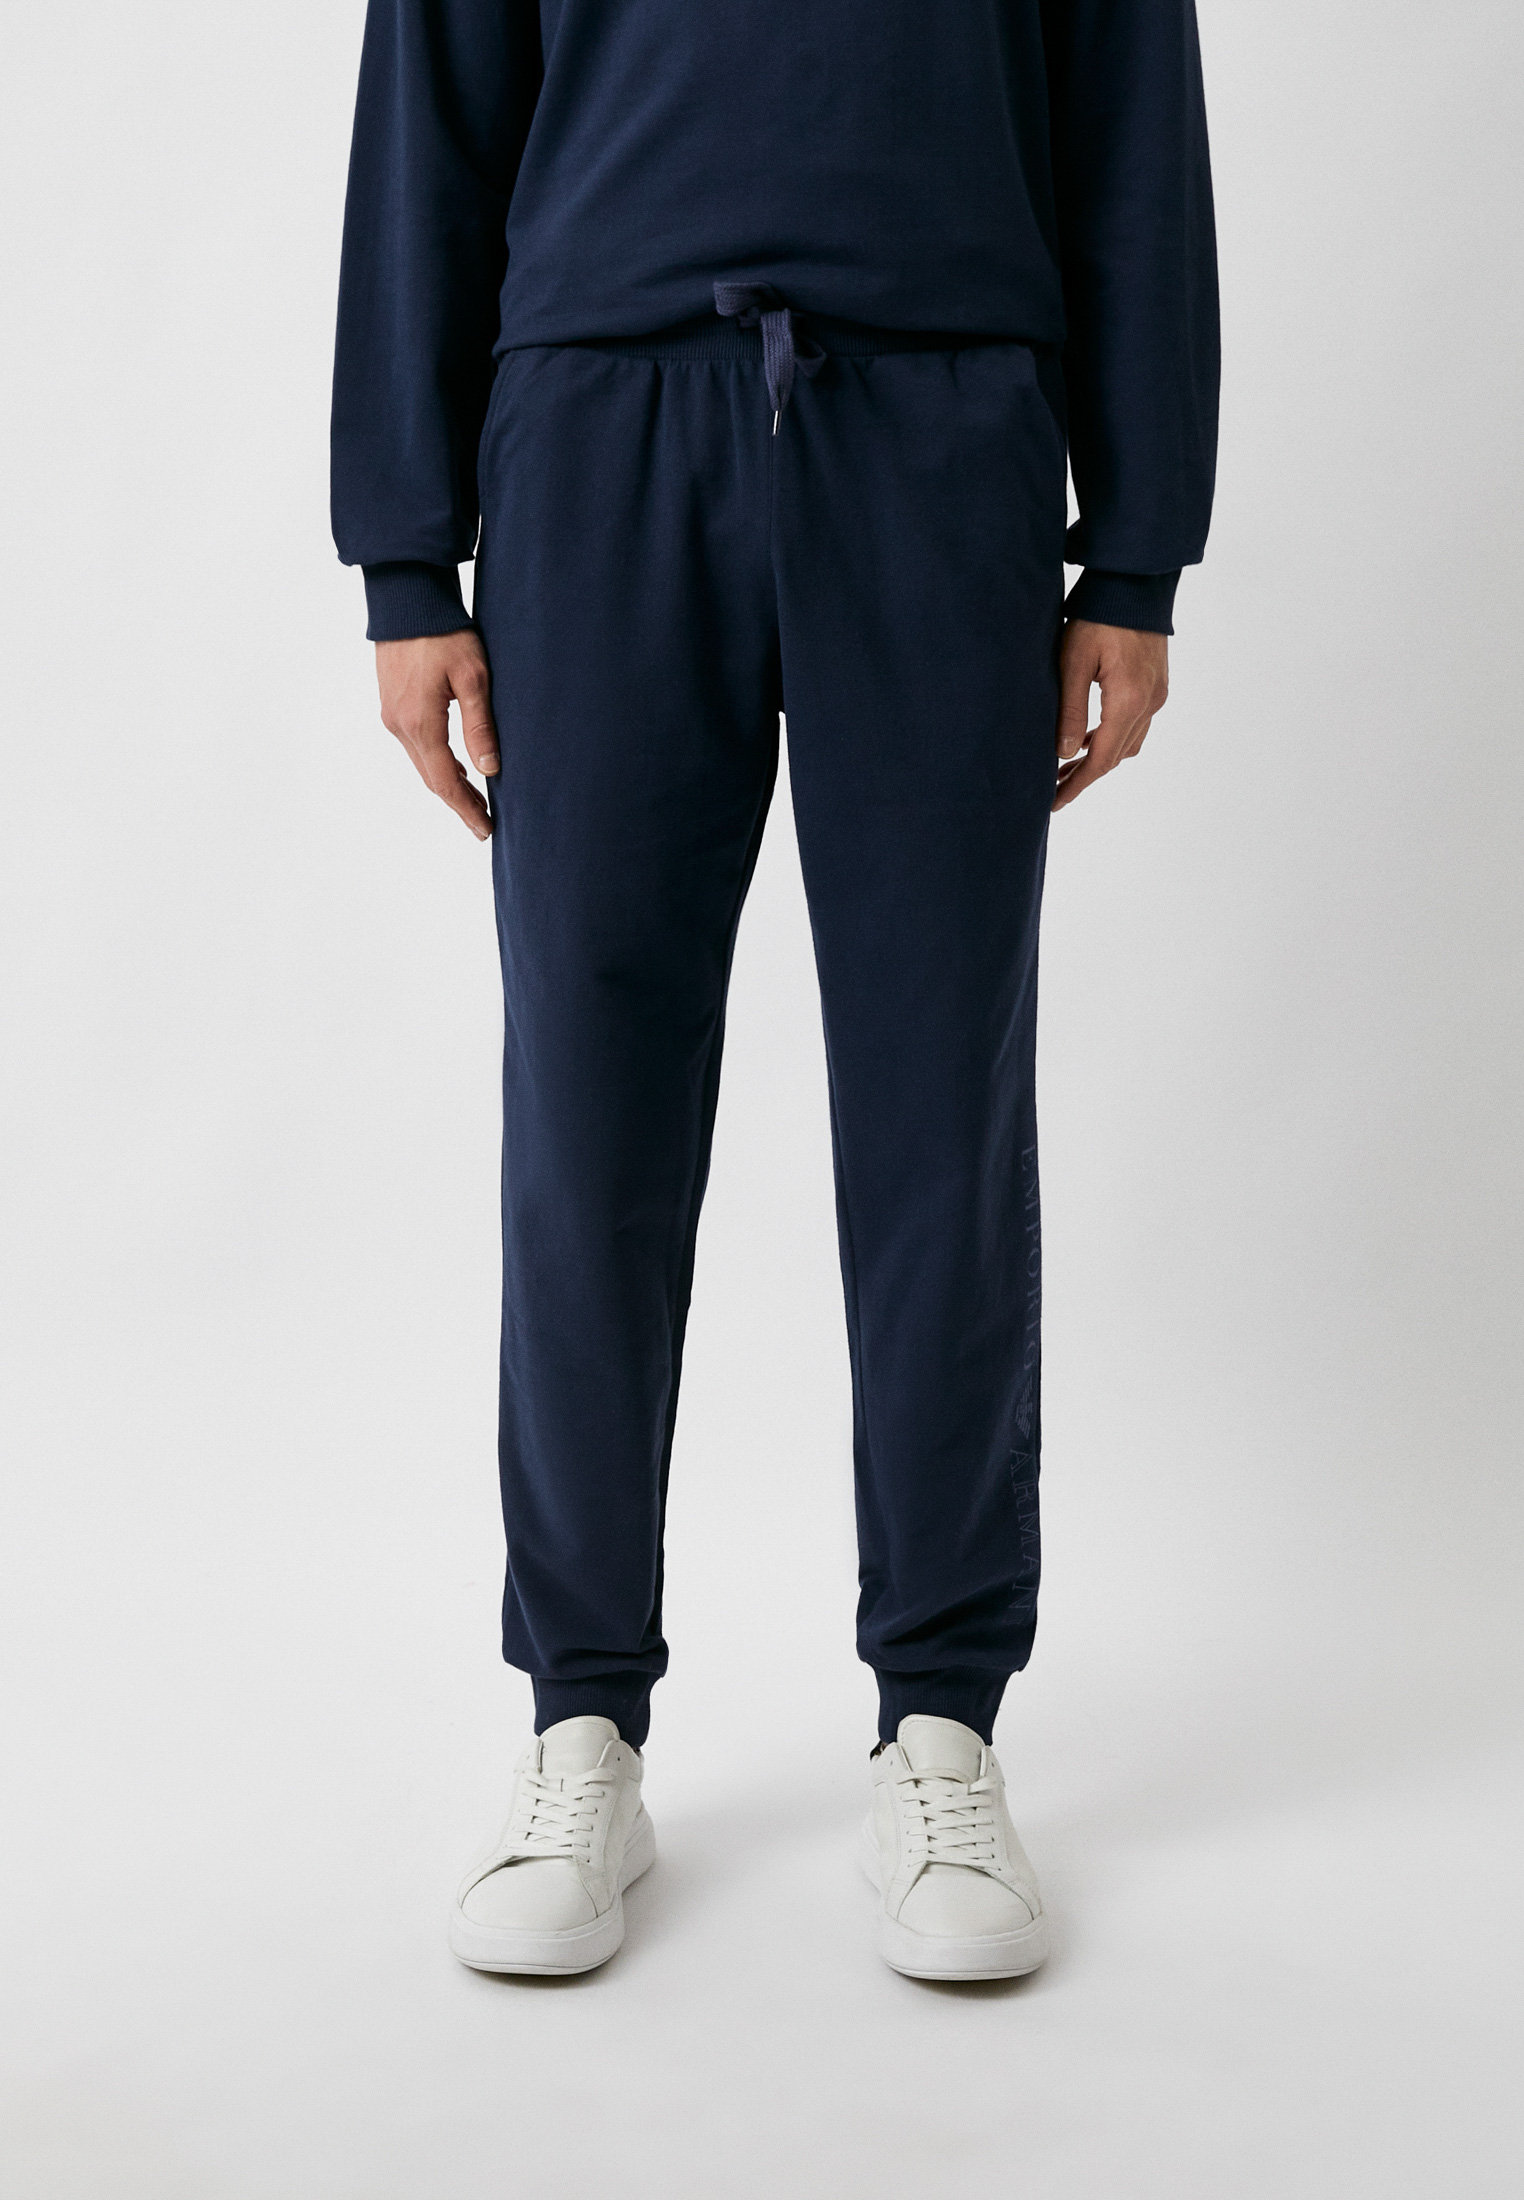 Мужские домашние брюки Emporio Armani (Эмпорио Армани) 111690 3R566: изображение 1